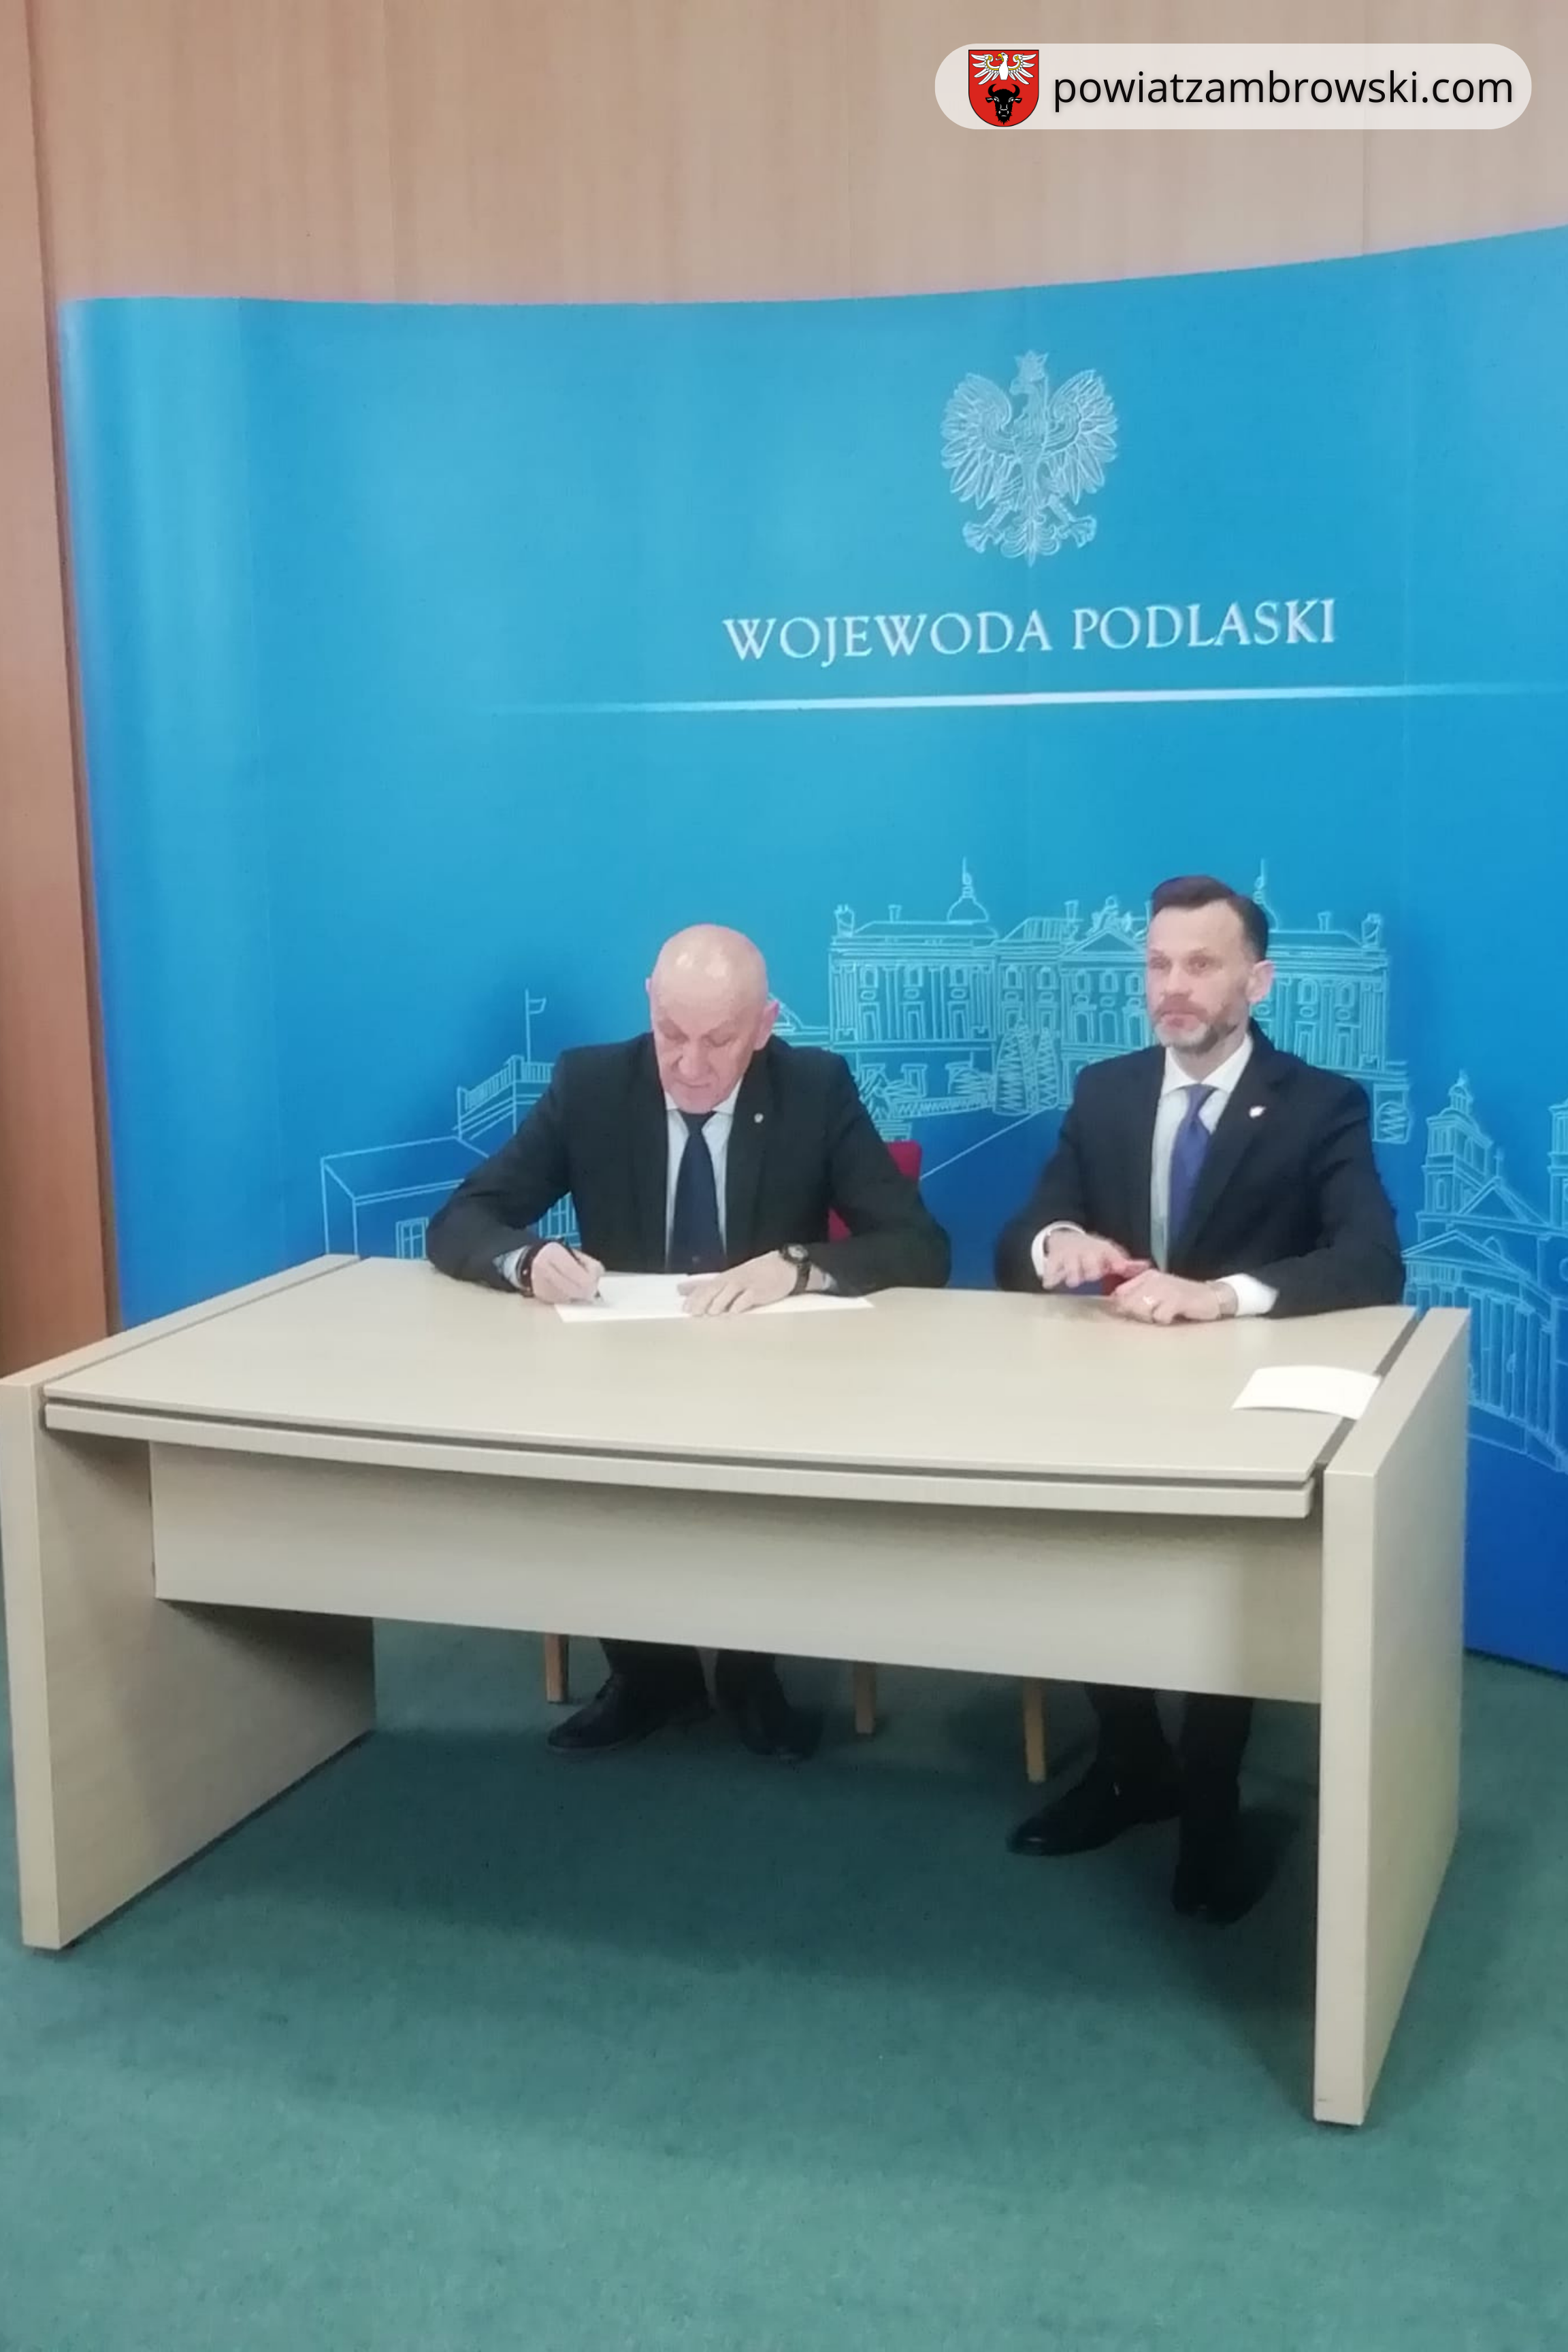 Starosta Zambrowski podpisuje umowę z Wojewodą podczas konferencji prasowej w Podlaskim Urzędzie Wojewódzkim 